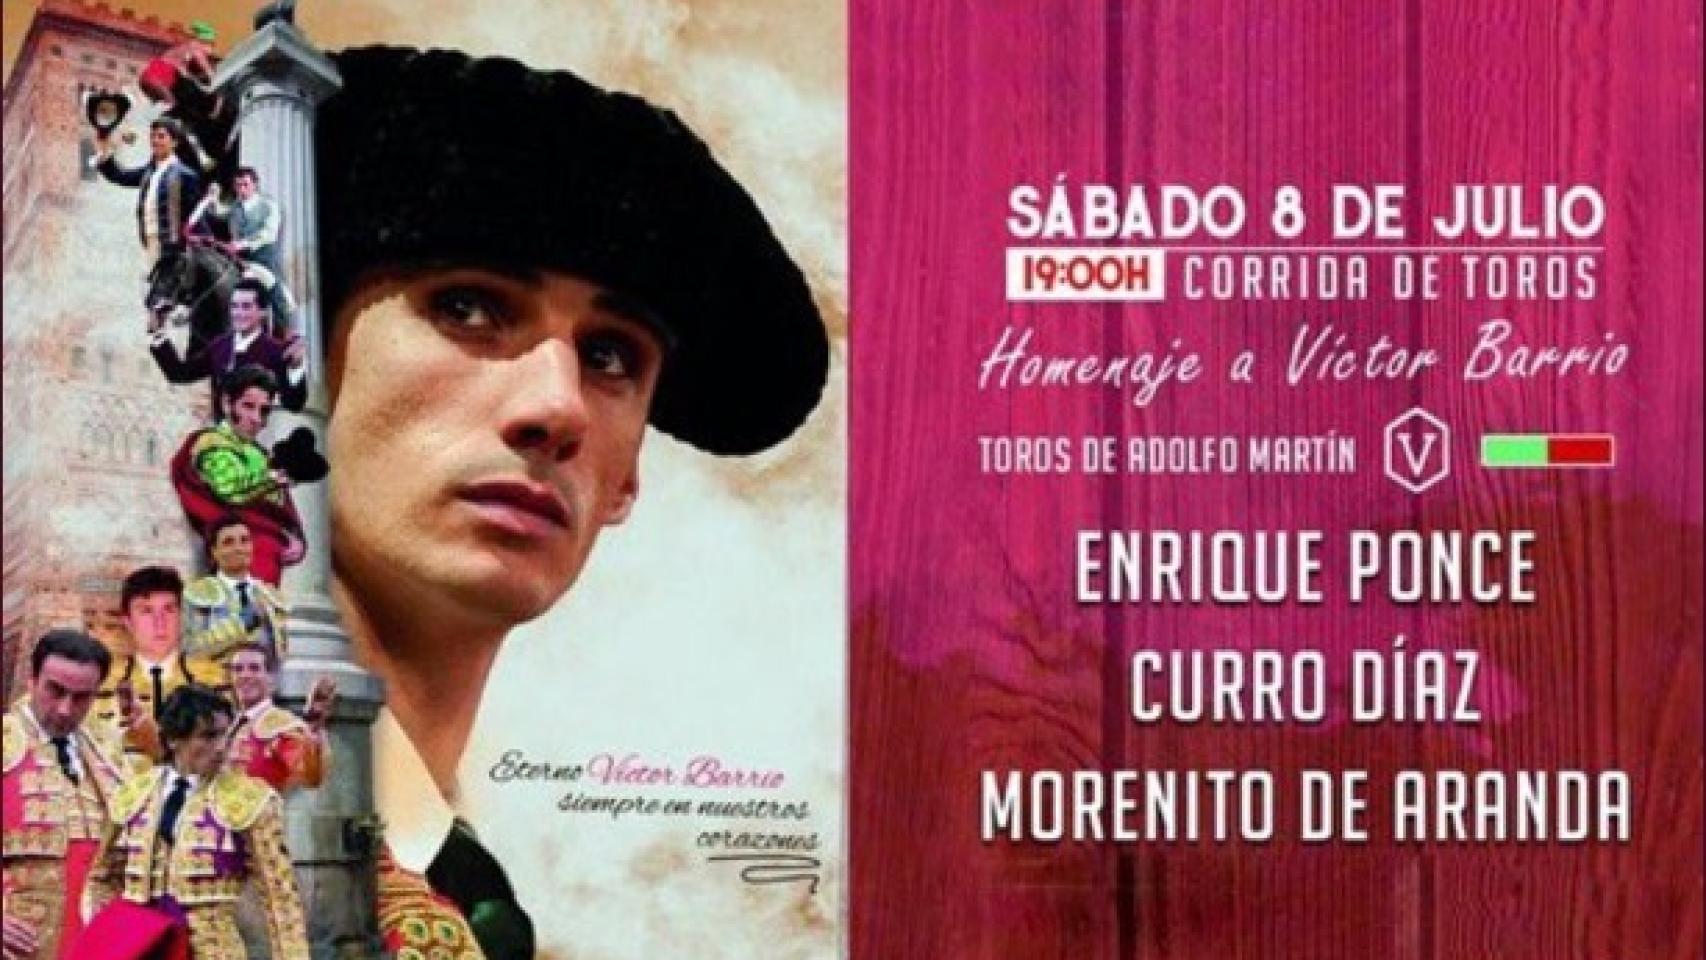 Cartel anunciador de la corrida de toros en homenaje a Víctor Barrio en Teruel.